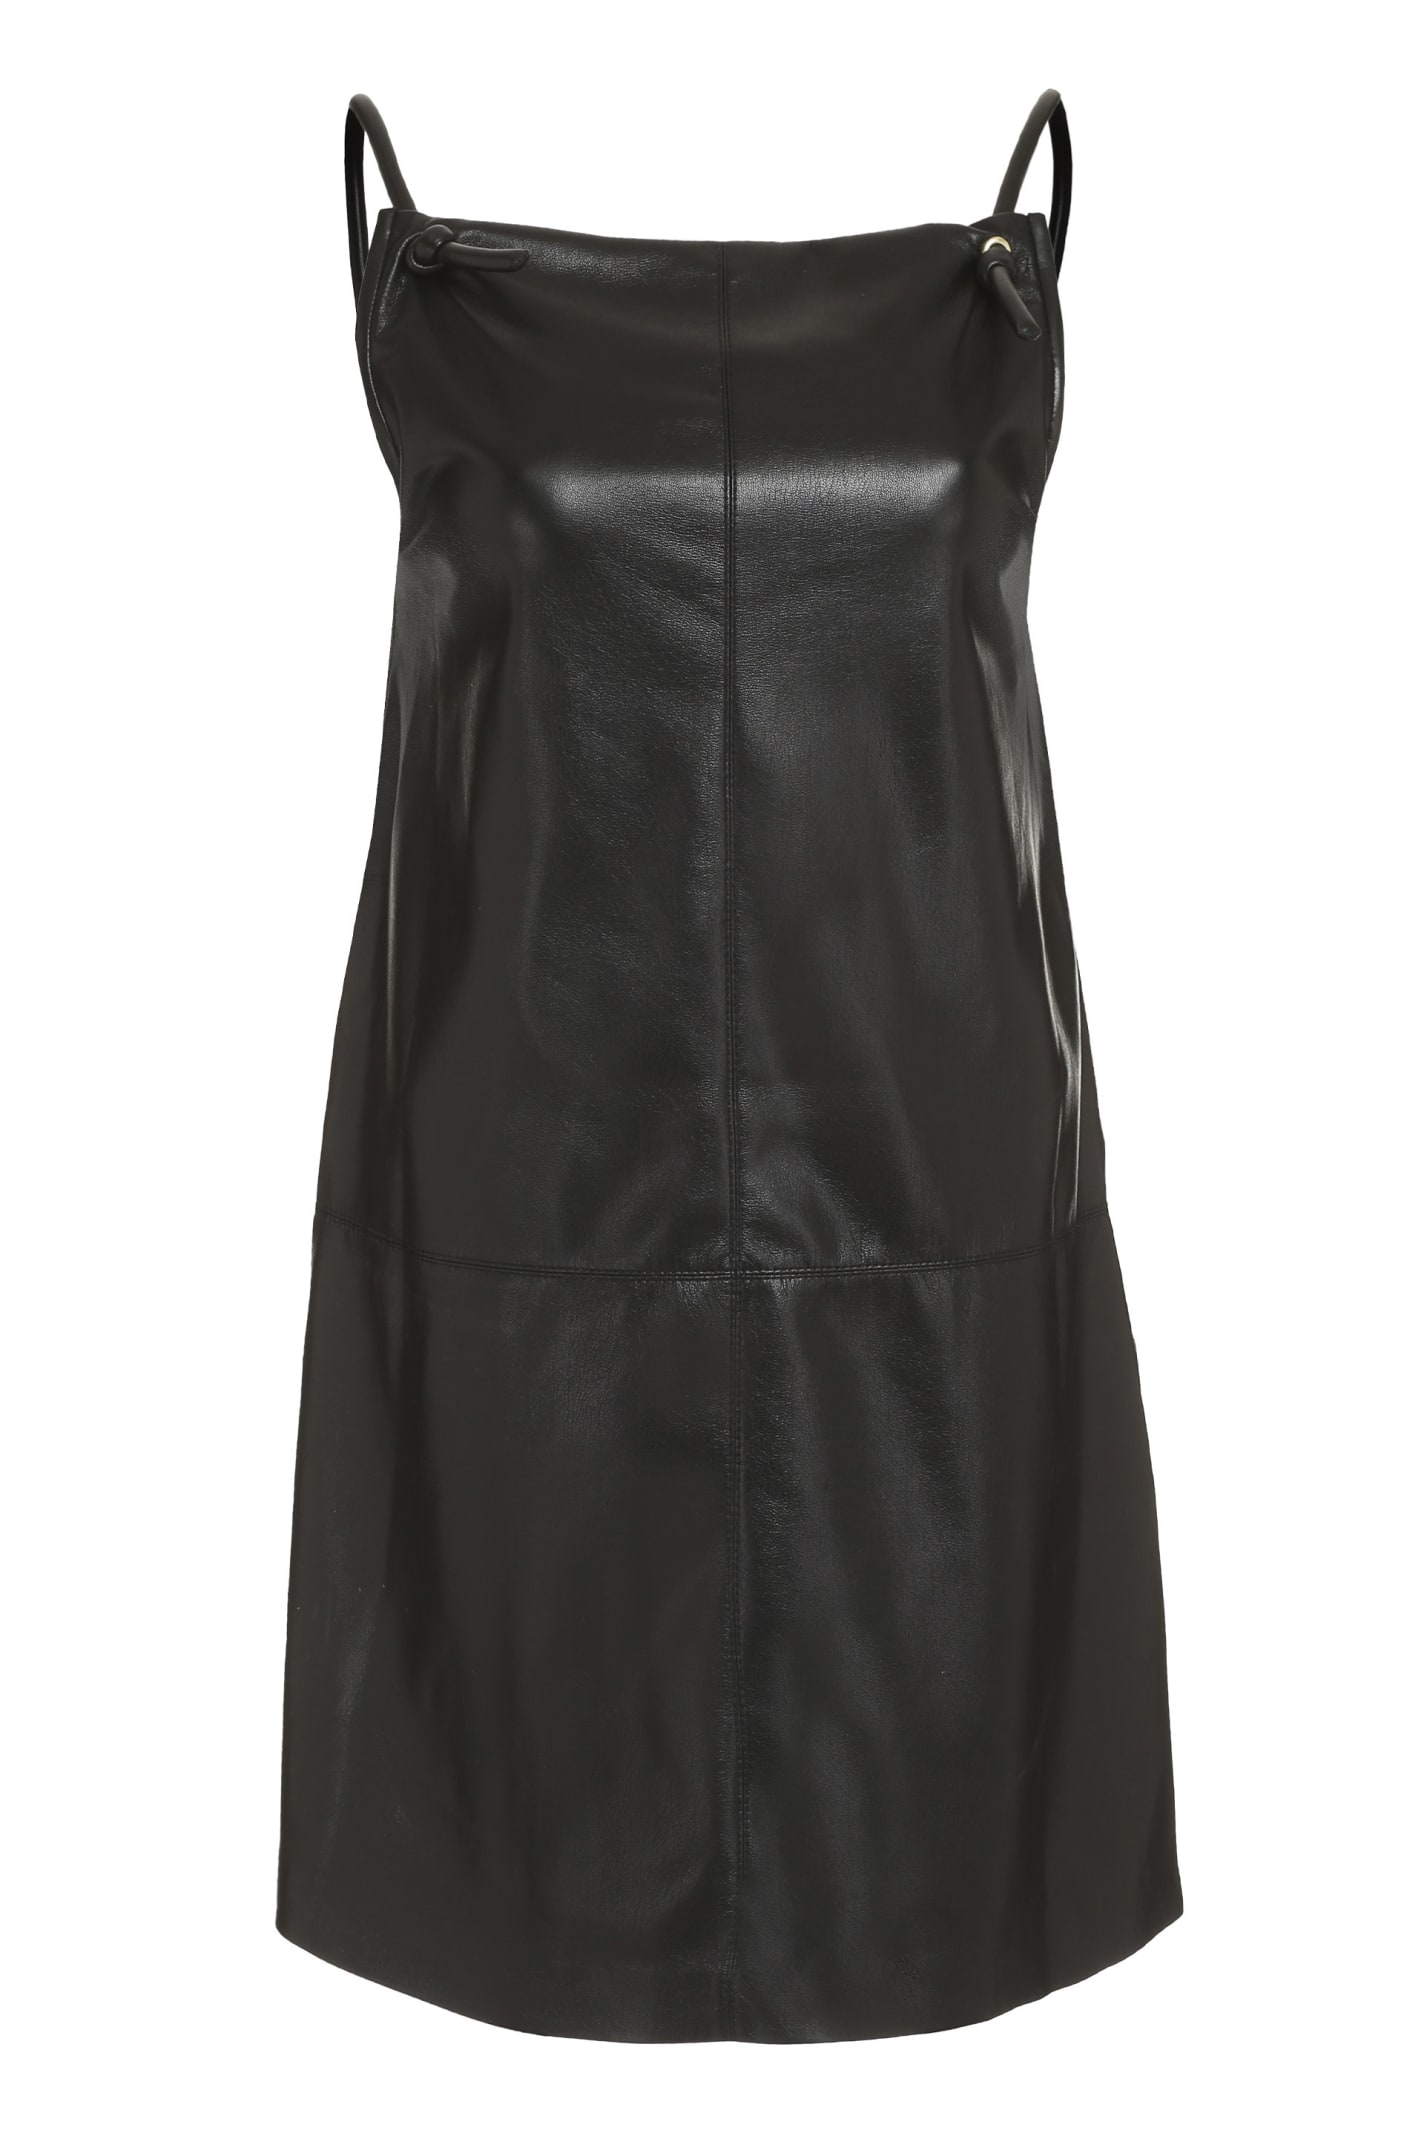 Nanushka Claire Vegan Leather Dress